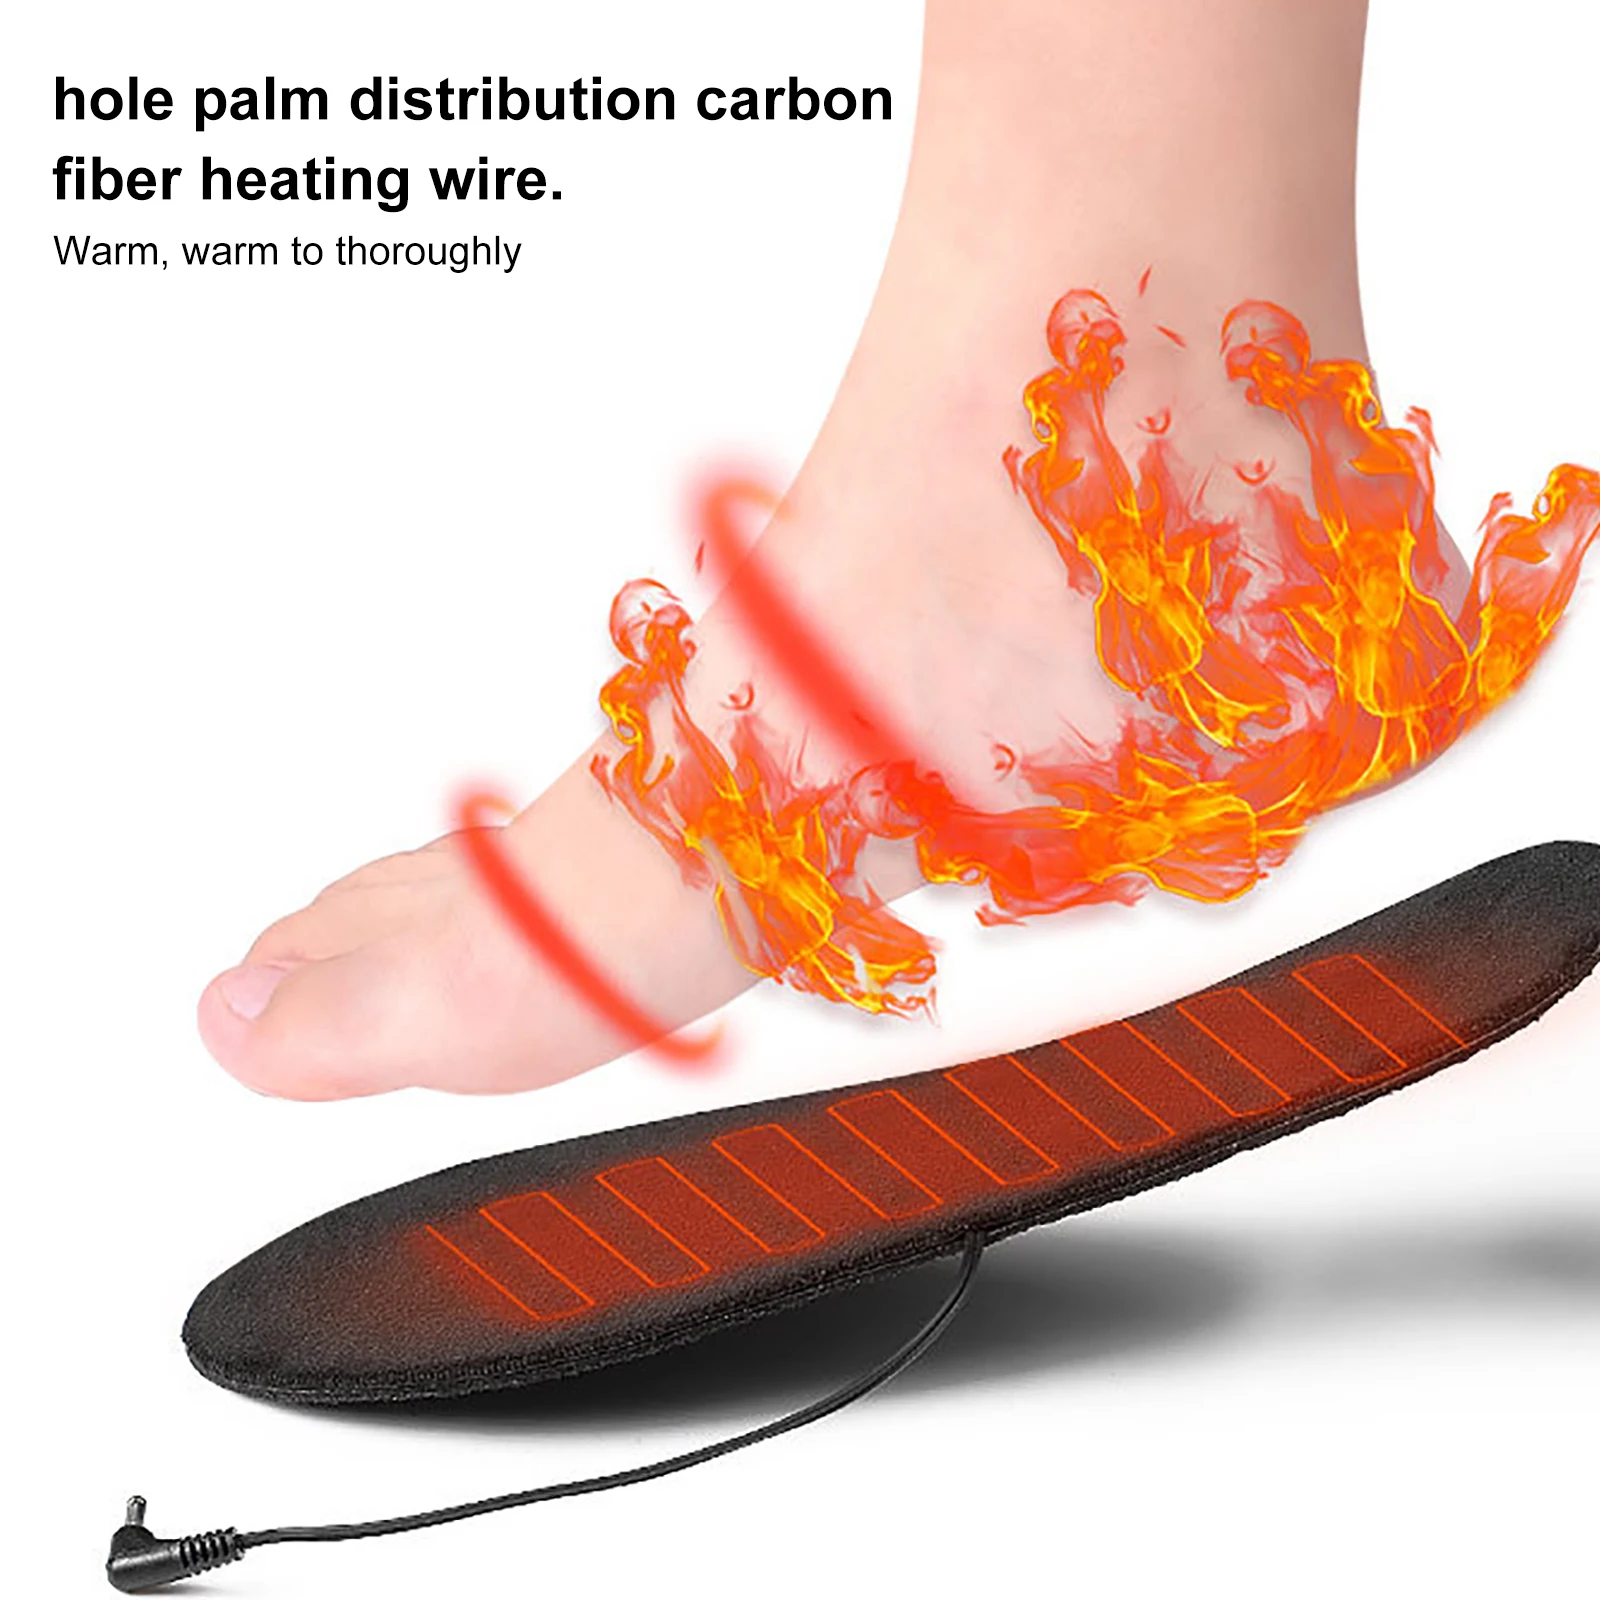 

Стельки с подогревом USB, теплые коврики для обуви, для зимних видов спорта, моющиеся, с зарядкой